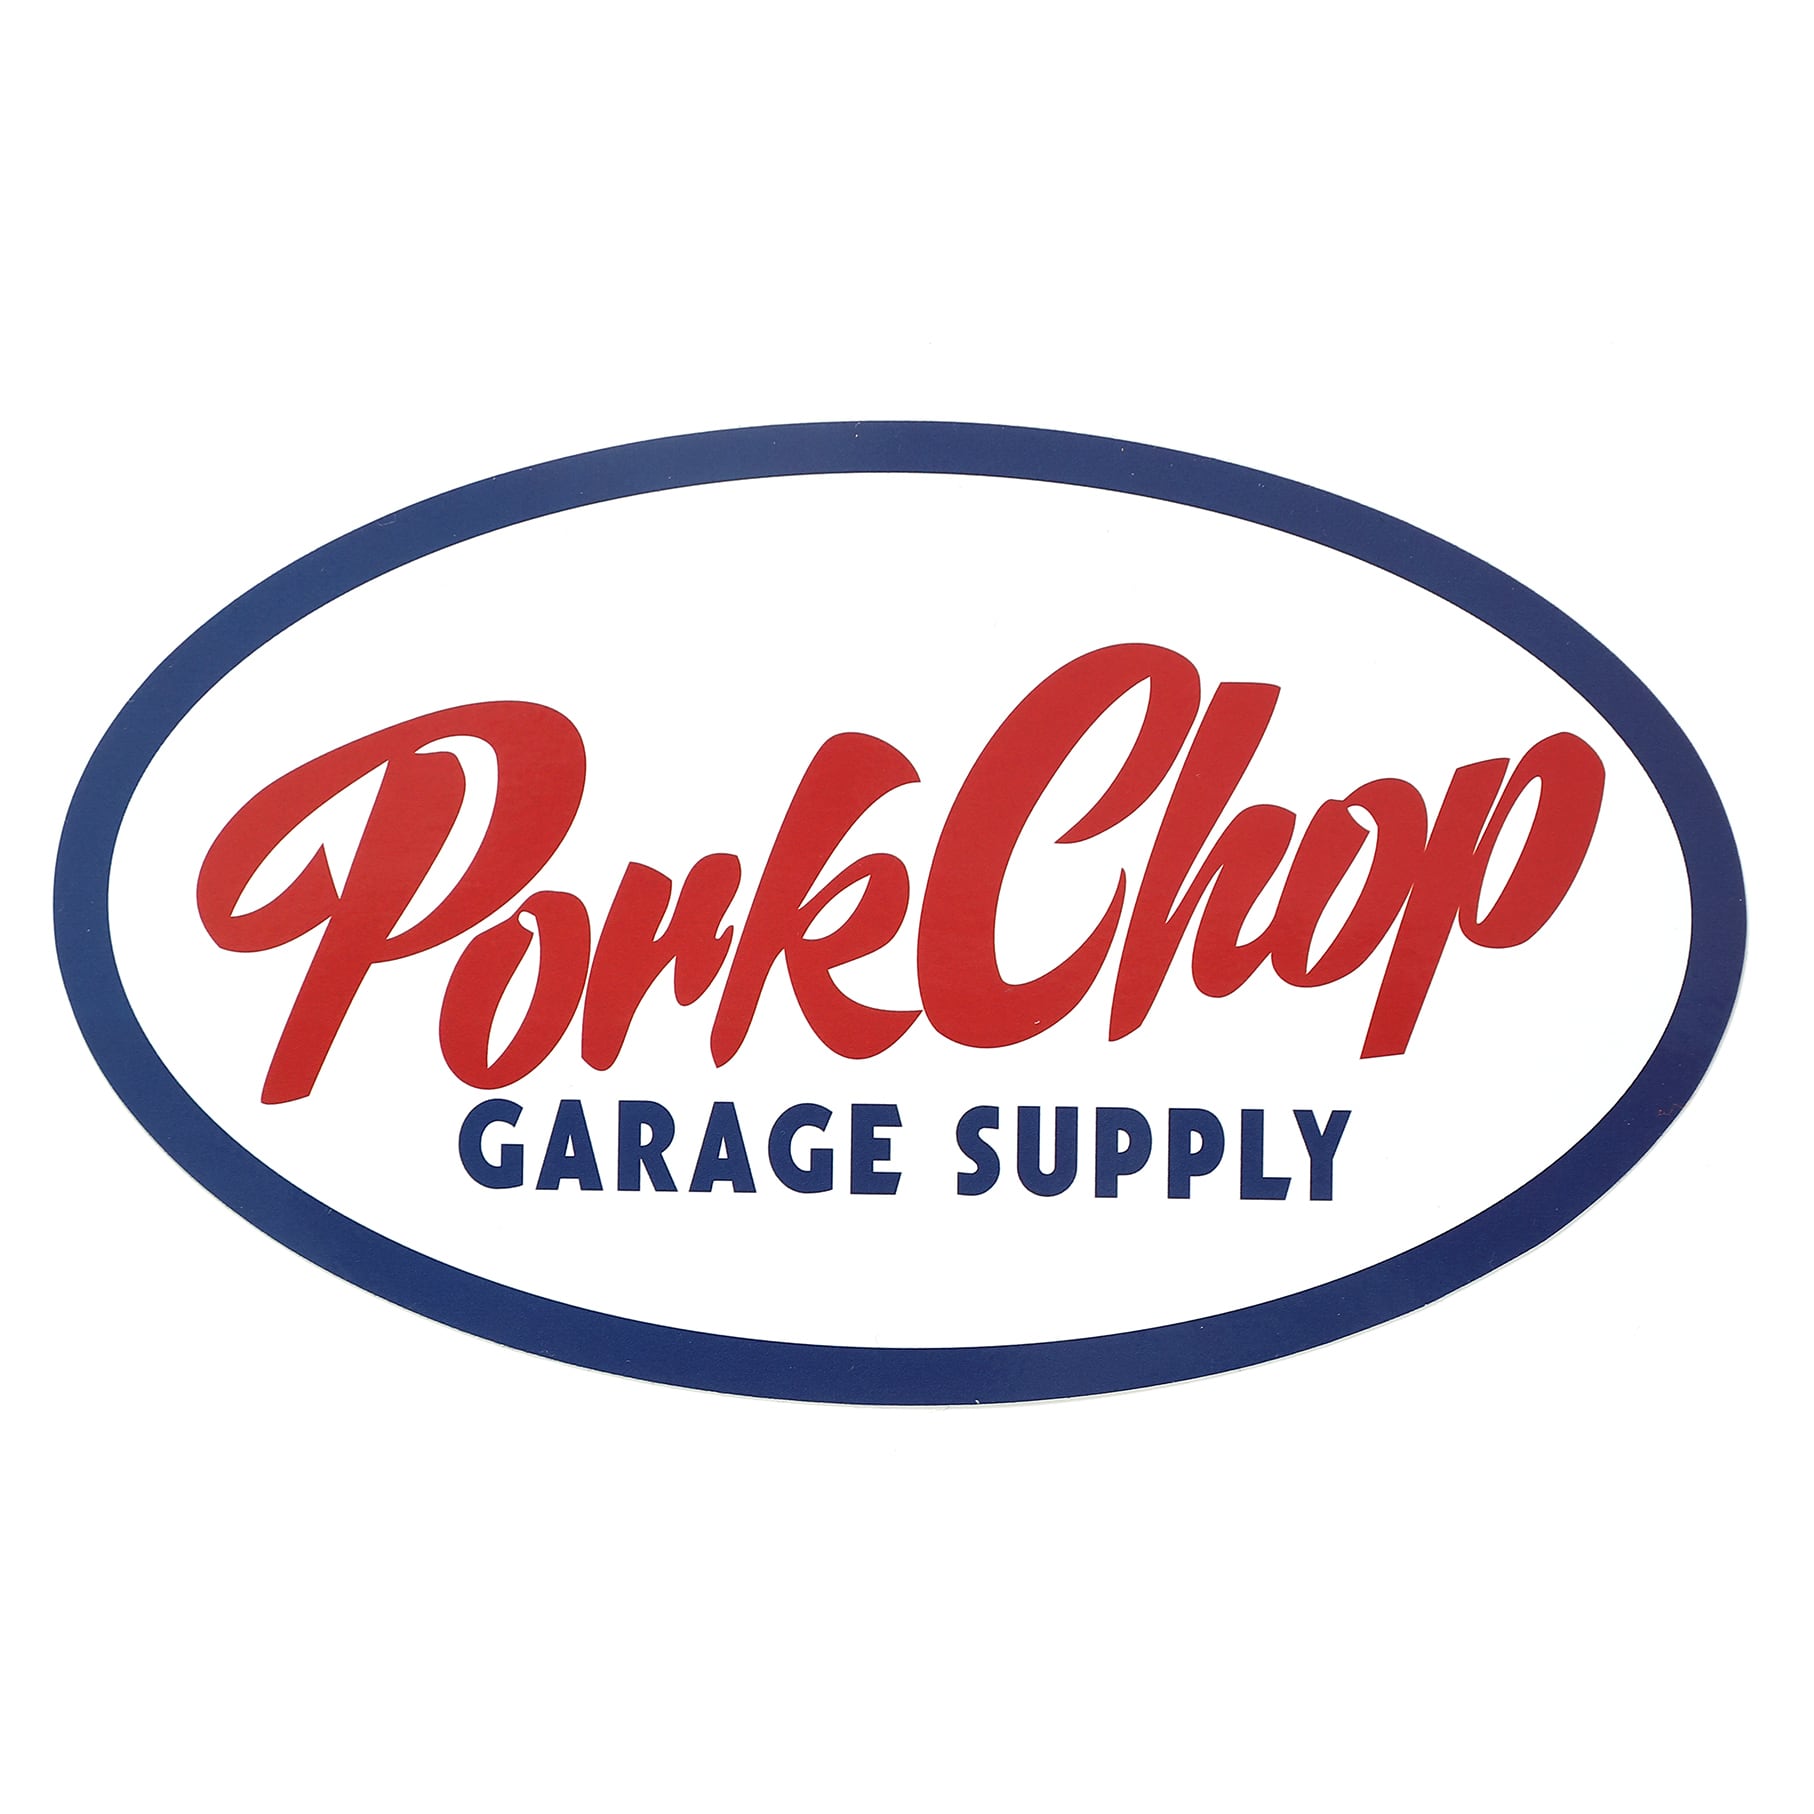 画像1: PORKCHOP GARAGE SUPPLY | OVAL TRICO STICKER  (1)